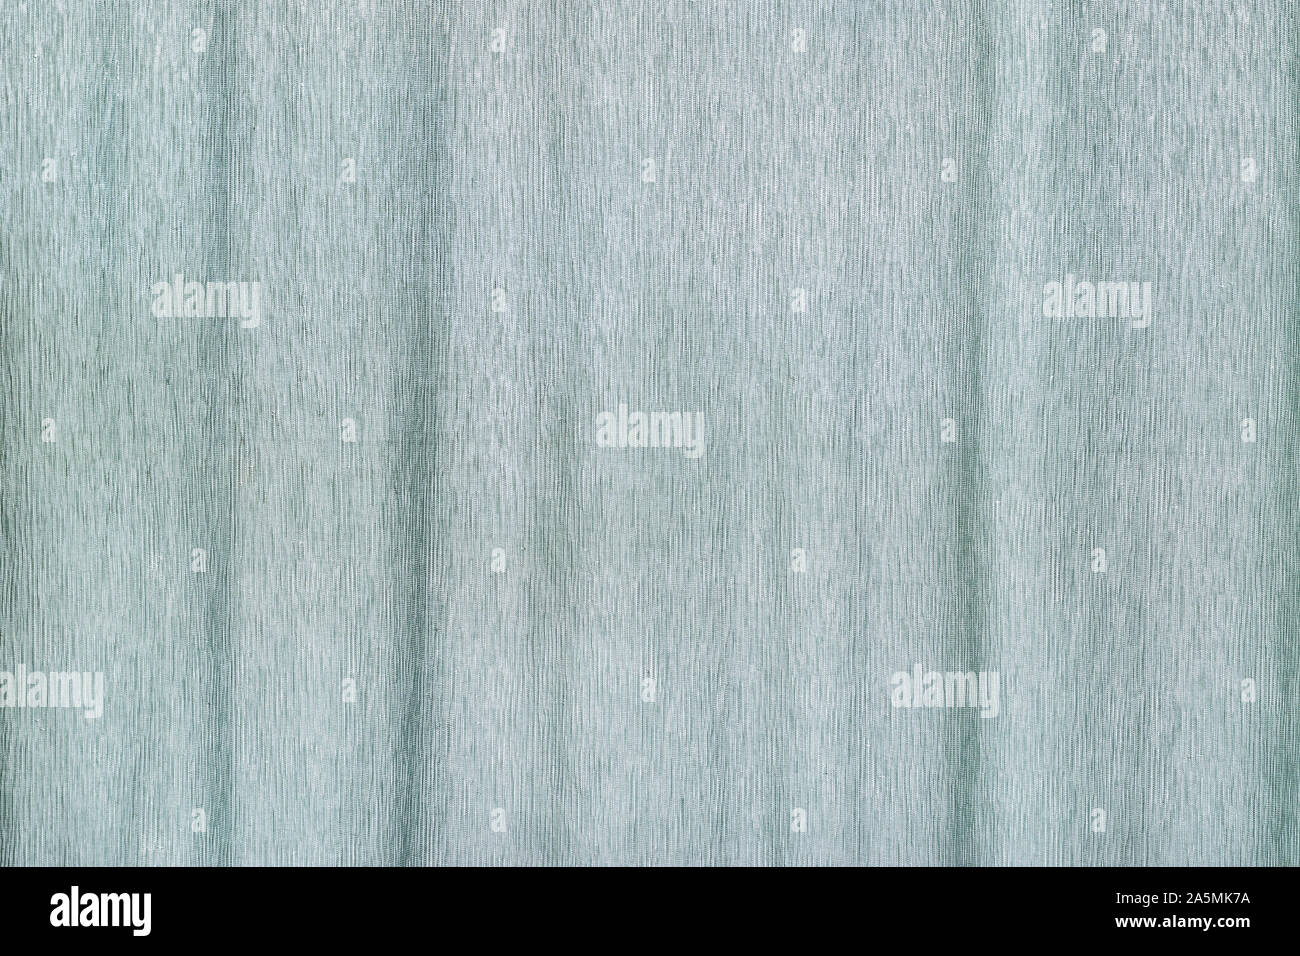 Luz de fondo en tejido de seda de color azul, cortina telón de fondo Foto de stock